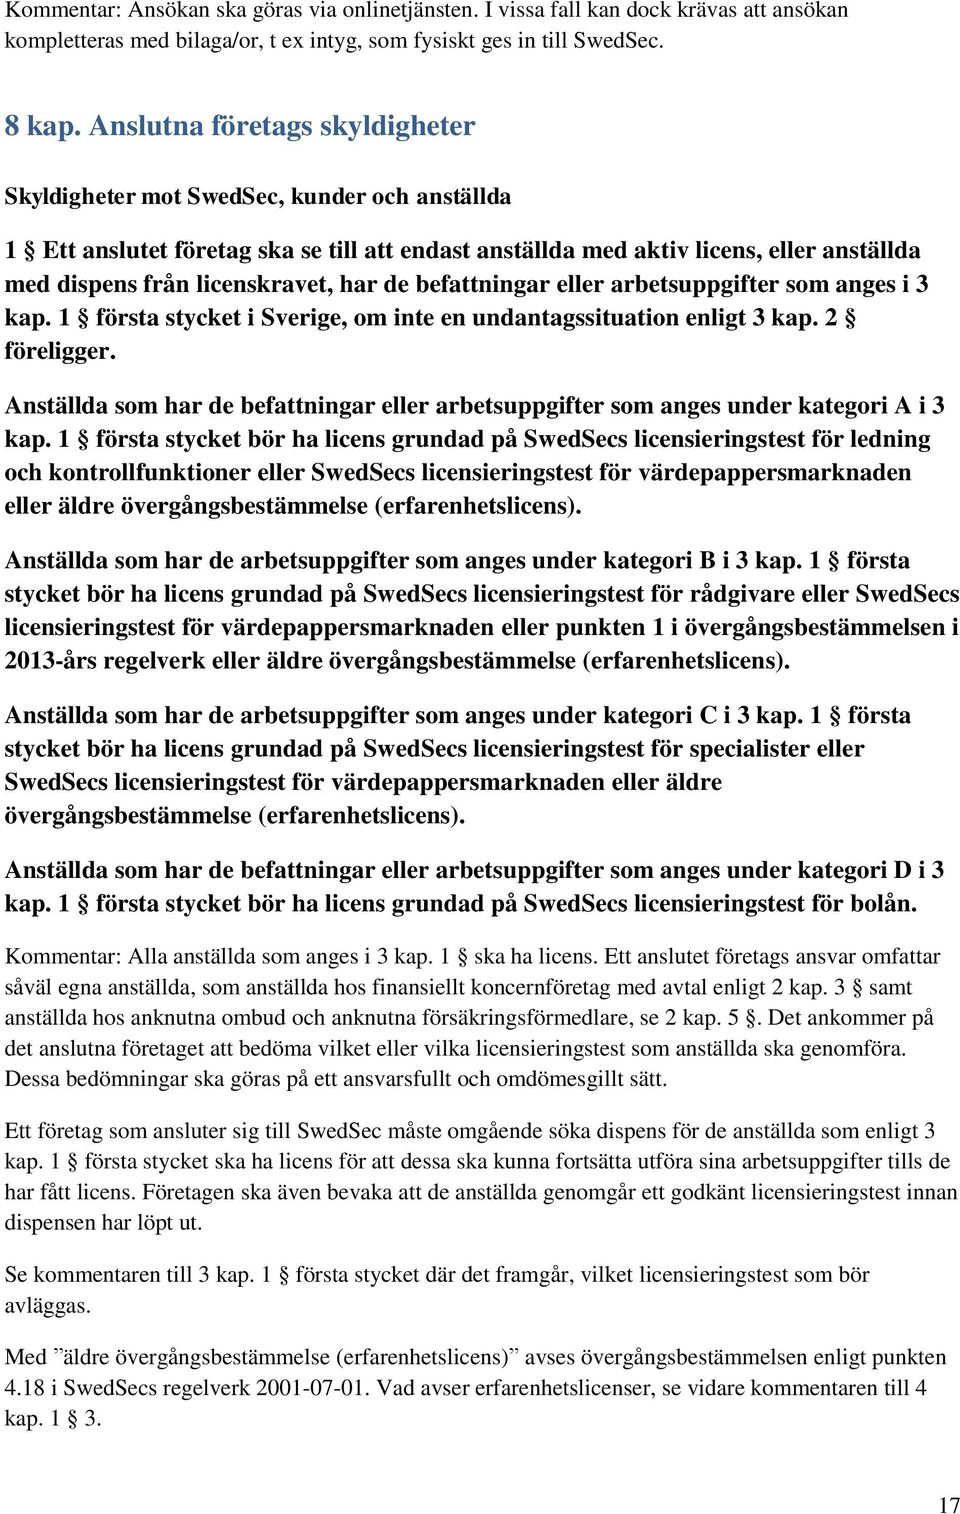 har de befattningar eller arbetsuppgifter som anges i 3 kap. 1 första stycket i Sverige, om inte en undantagssituation enligt 3 kap. 2 föreligger.